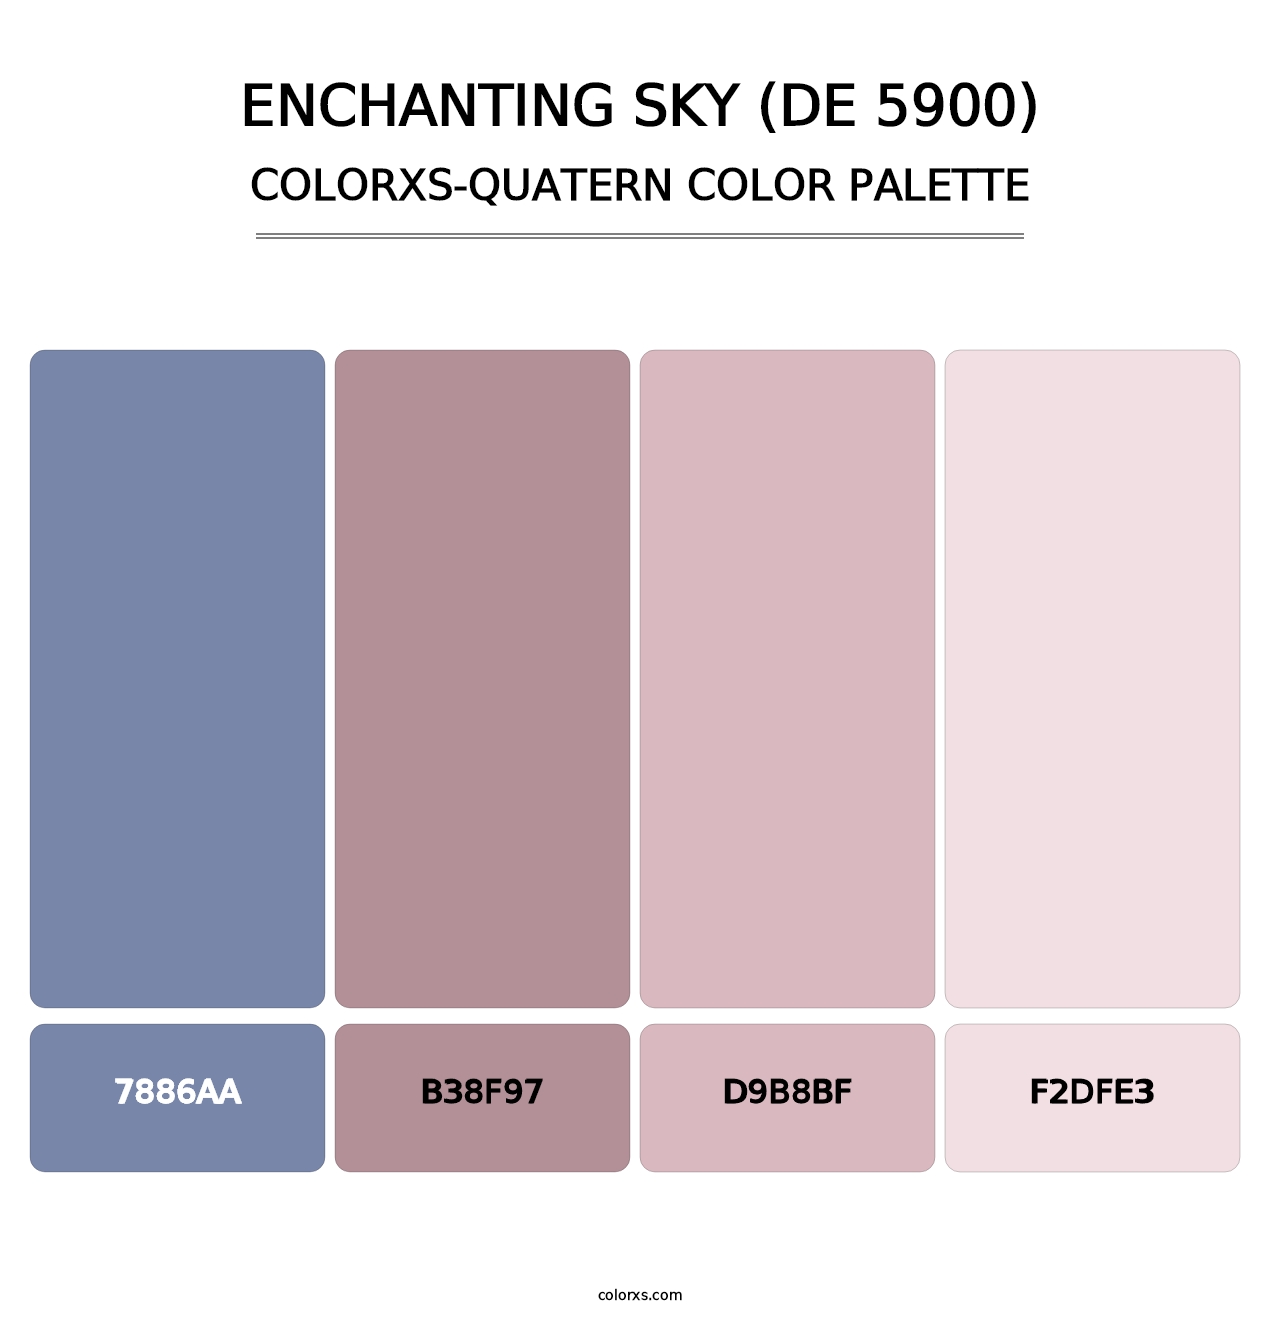 Enchanting Sky (DE 5900) - Colorxs Quatern Palette